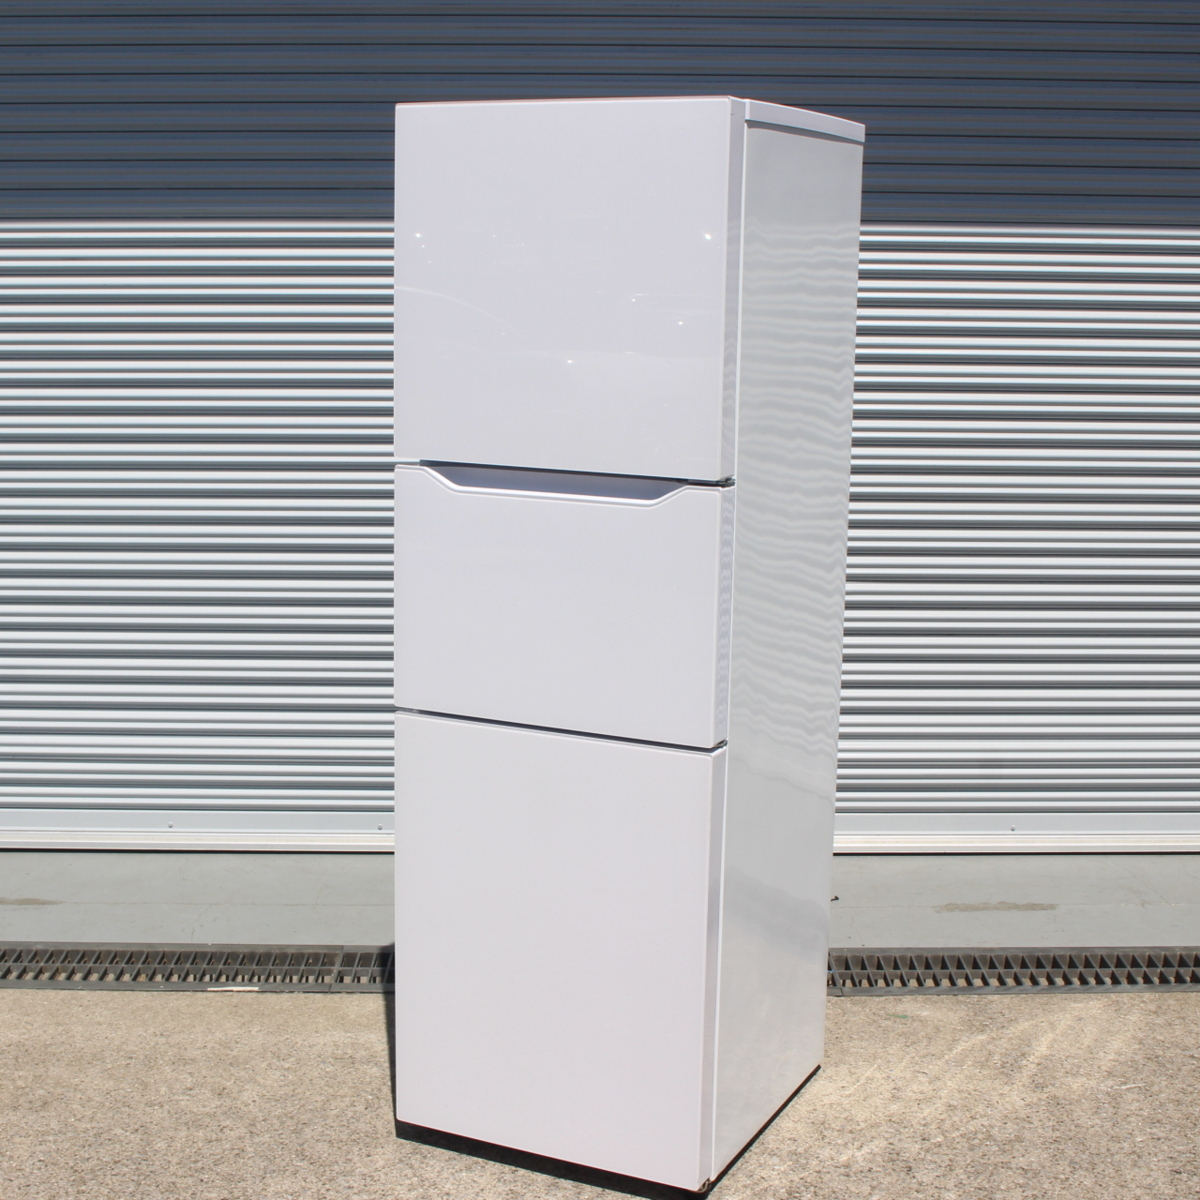 ツインバード ノンフロン冷凍冷蔵庫 HR-E919 199L 3ドア  2018年製